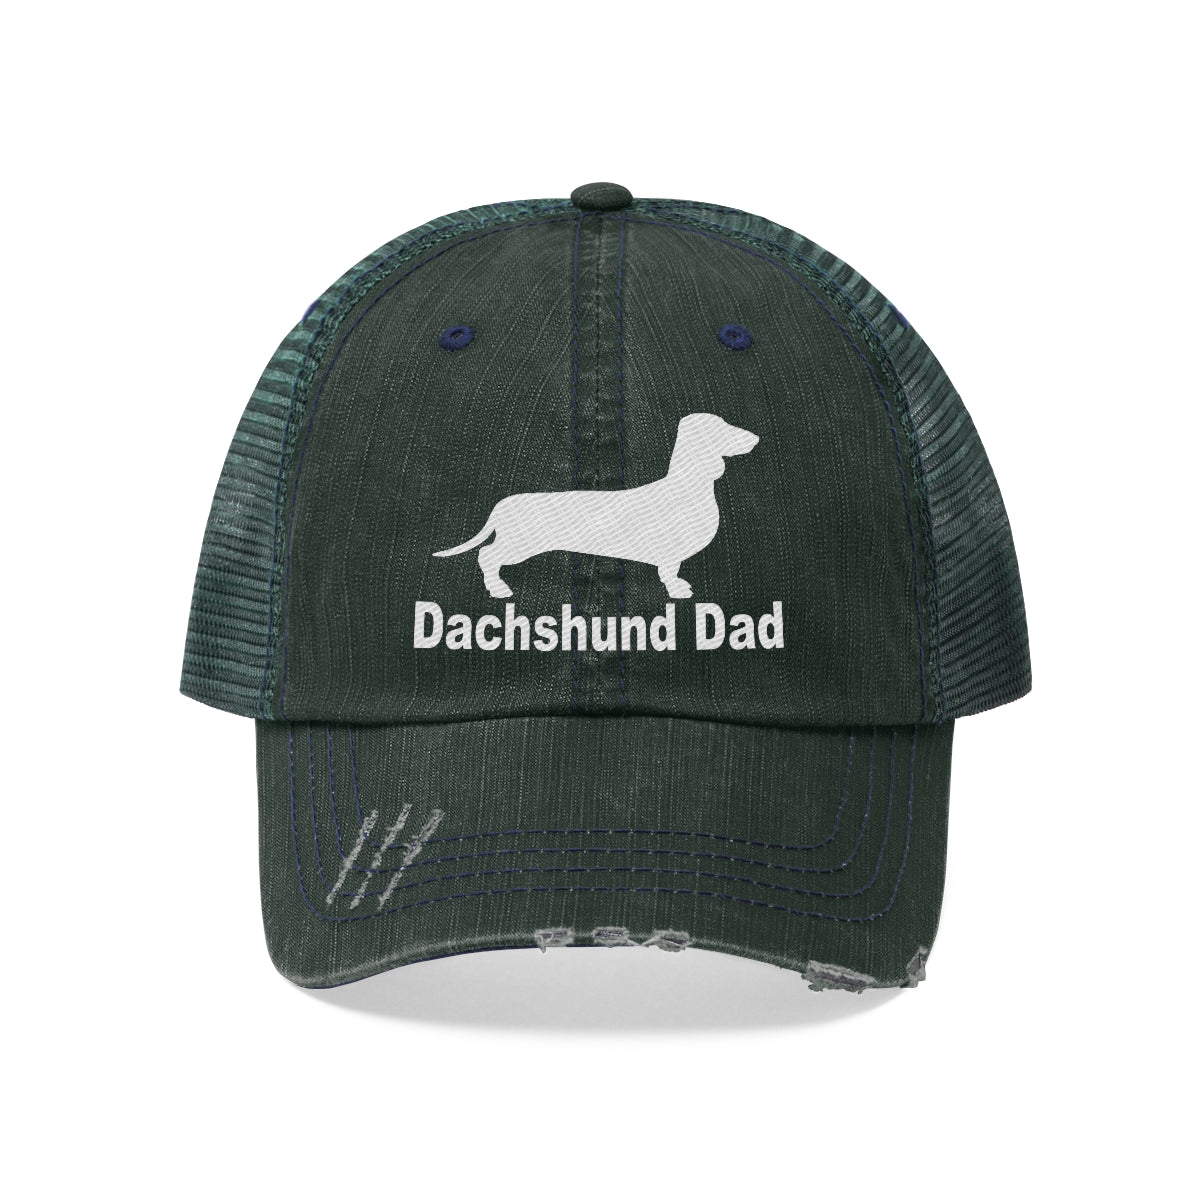 Dachshund Dad - Unisex Trucker Hat